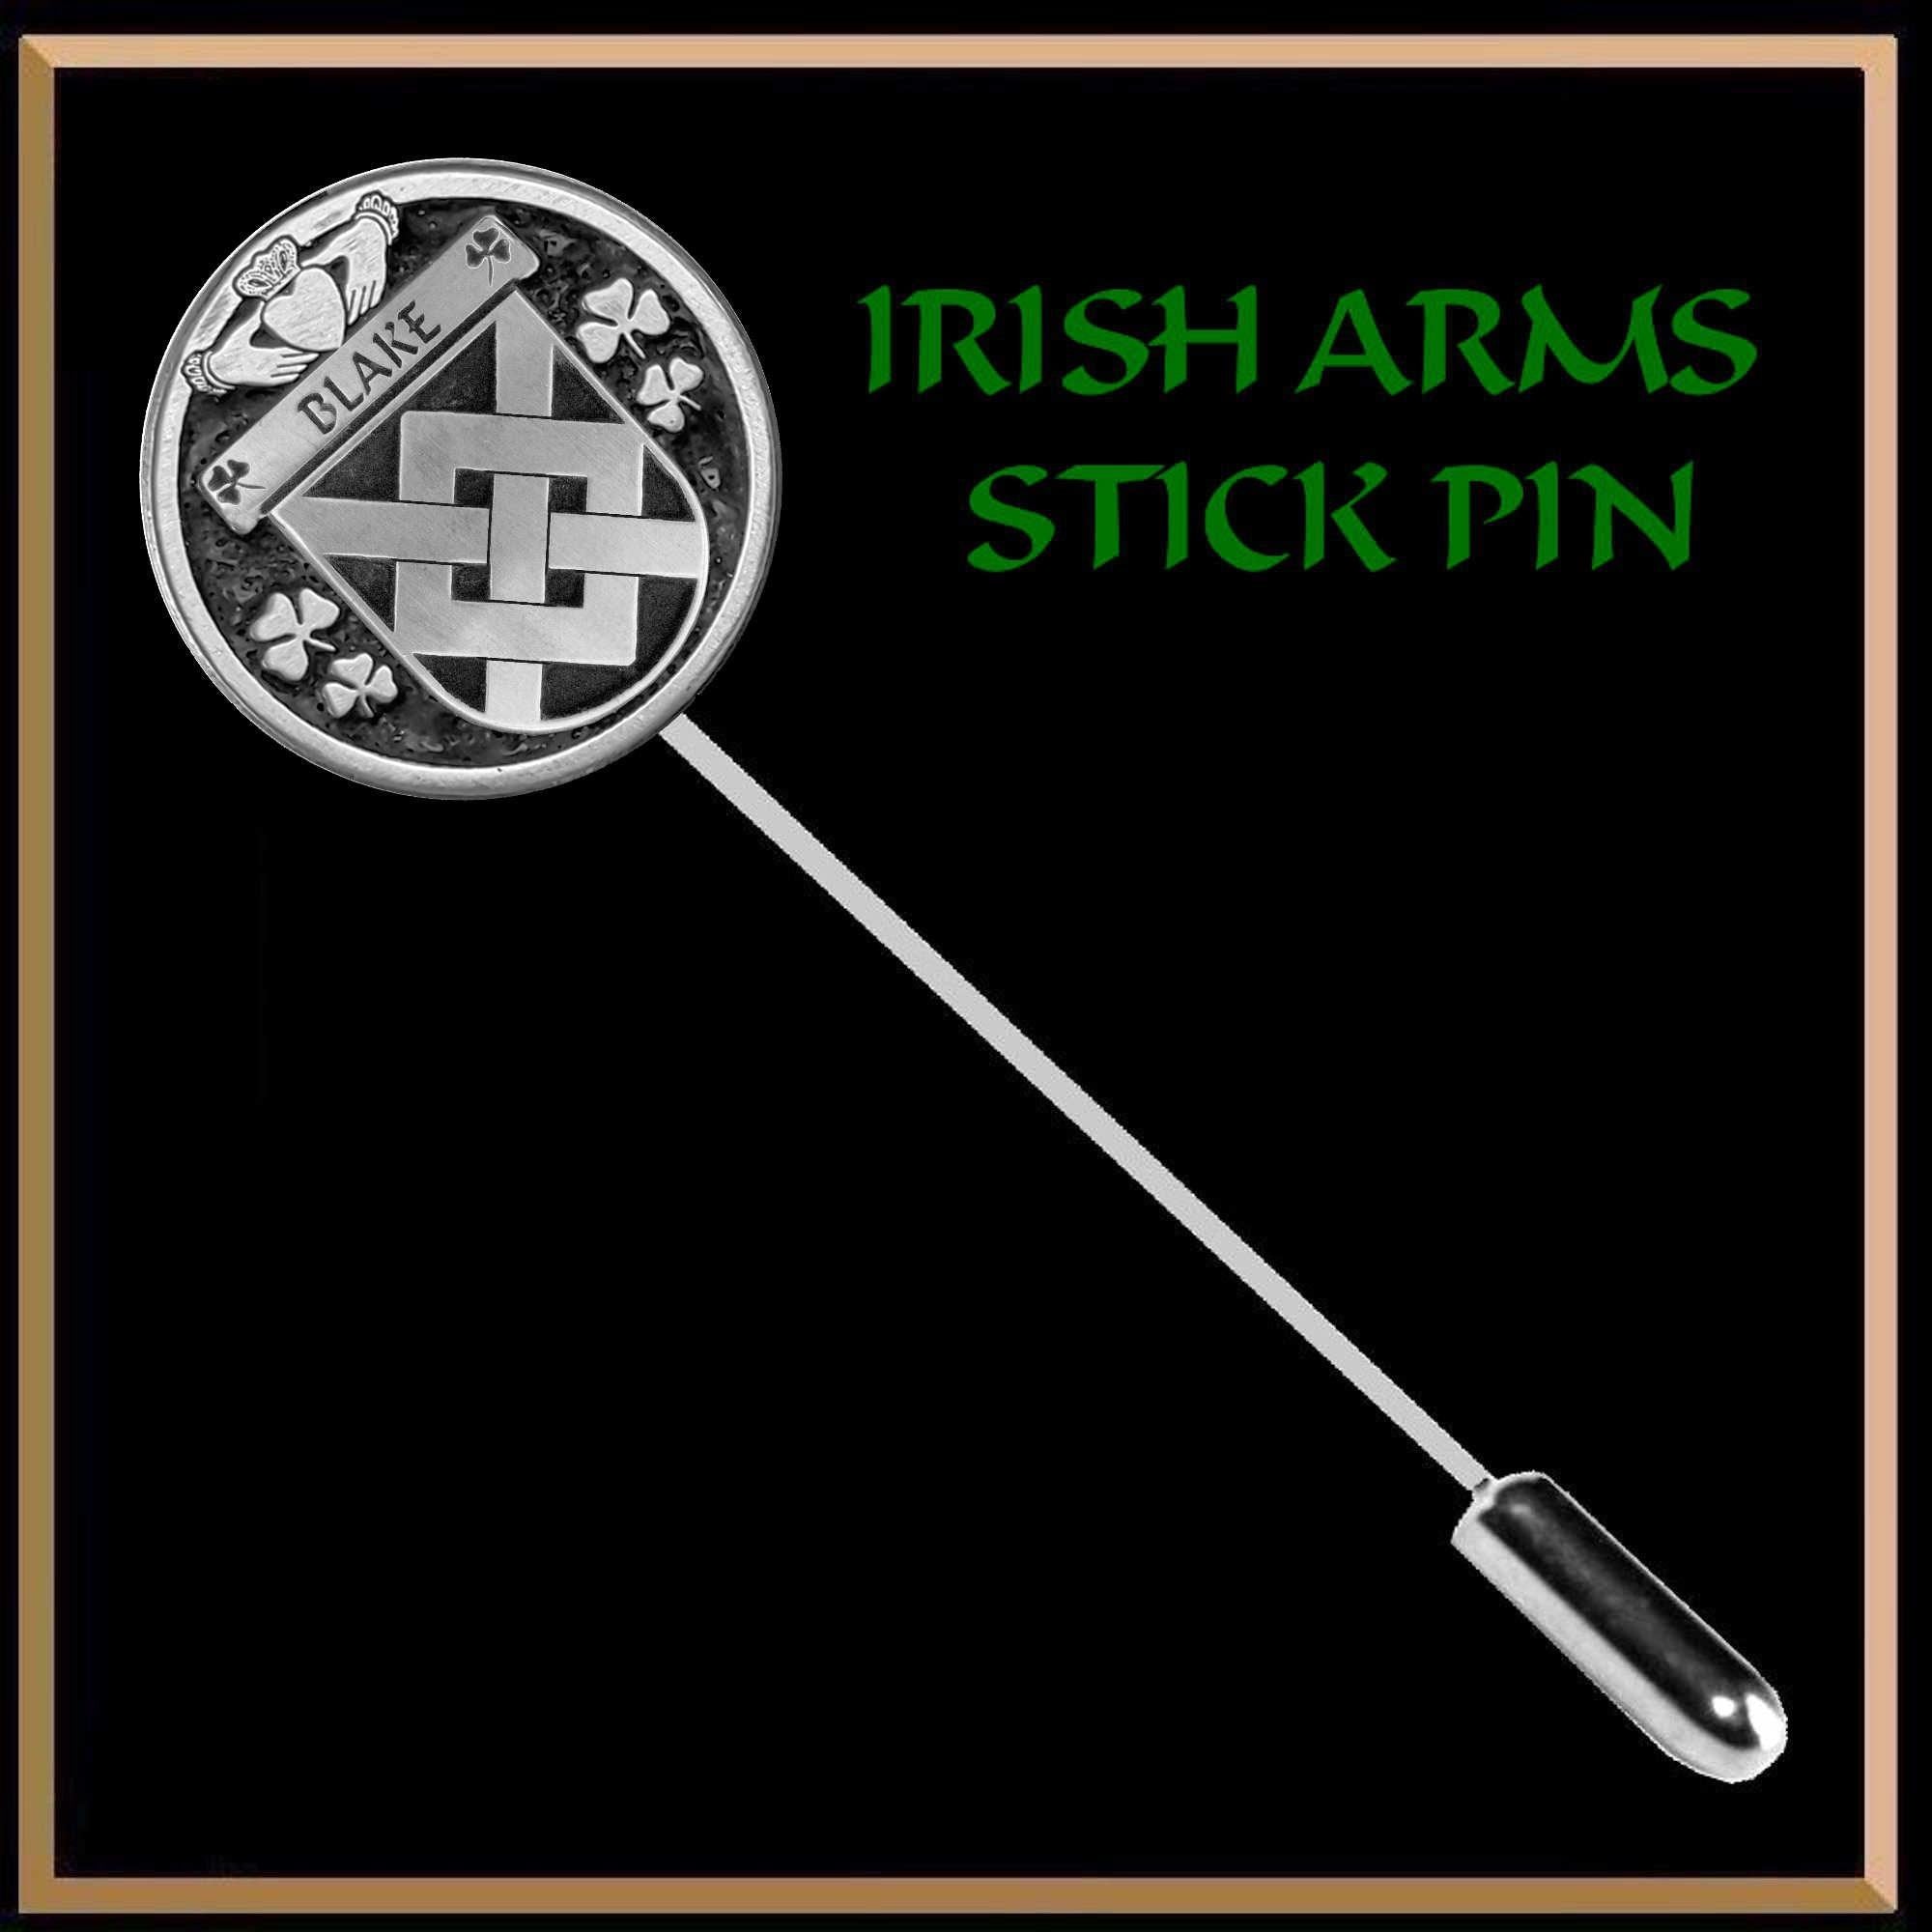 Blake Irish Family Coat of Arms Stick Pin